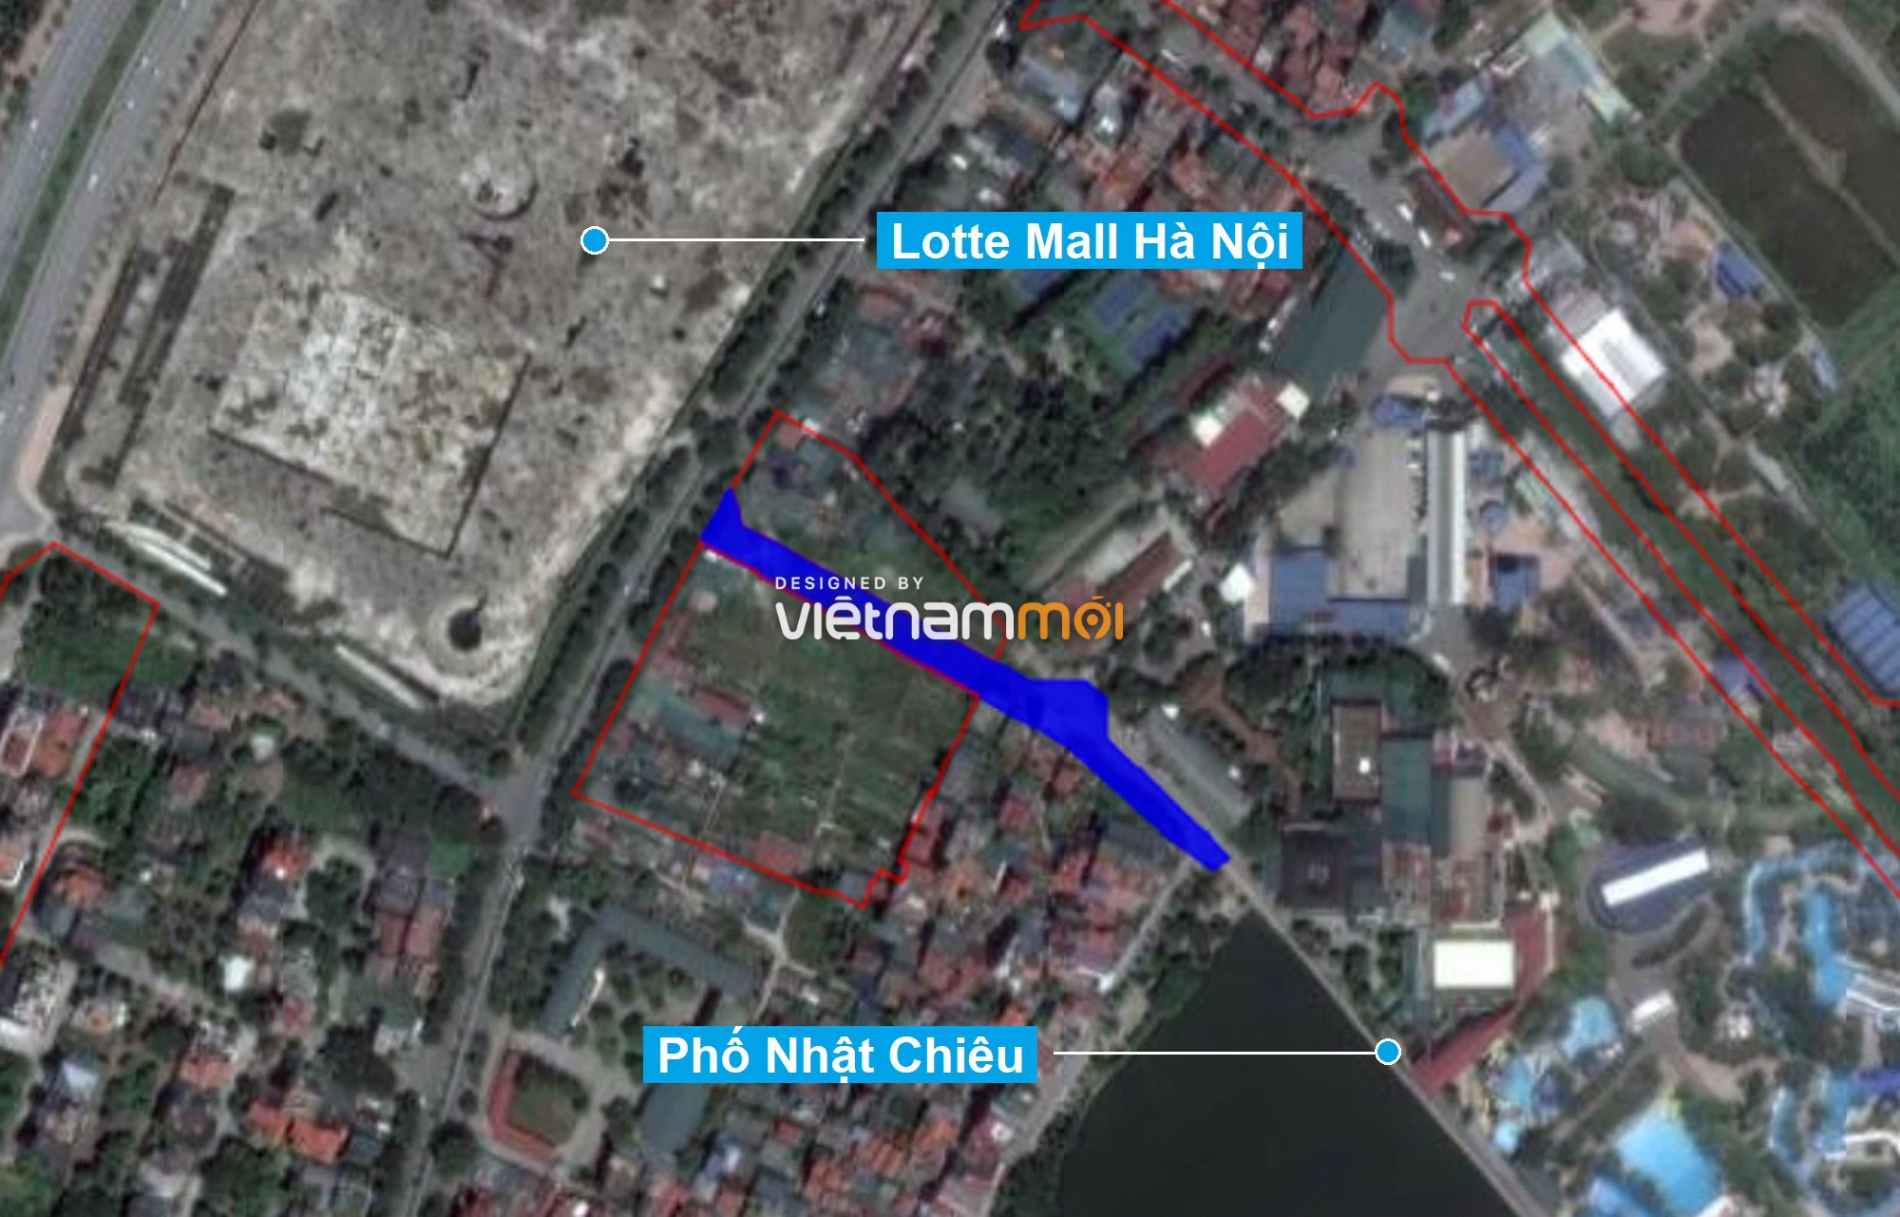 Những khu đất sắp thu hồi để mở đường ở quận Tây Hồ, Hà Nội (phần 3) - Ảnh 2.